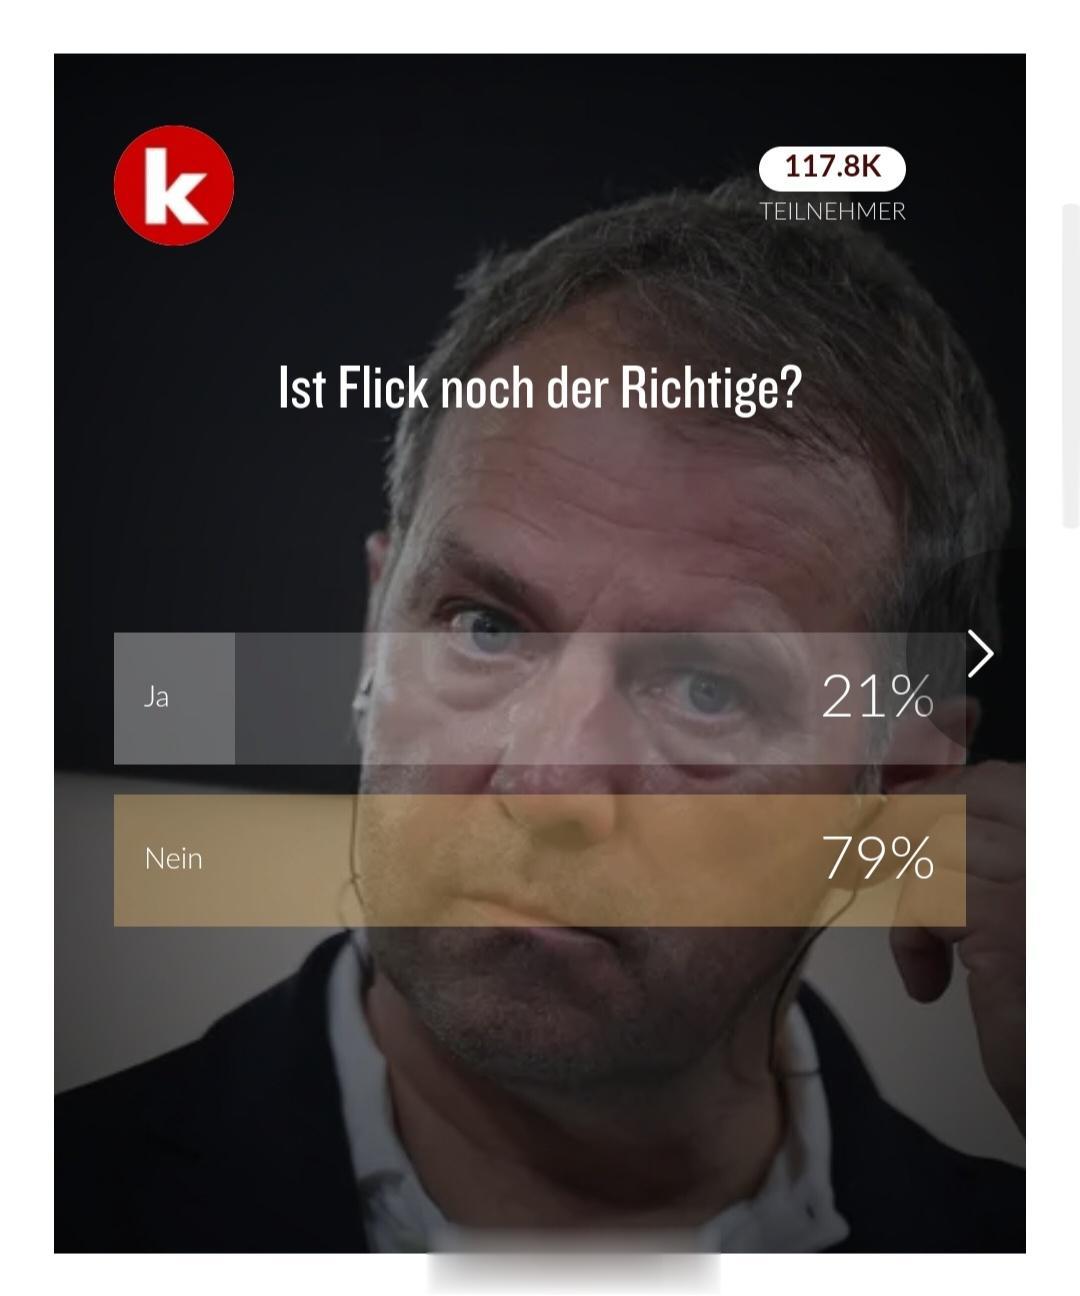 kicker民调，弗利克还合适吗？认为合适的只有21%。燃鹅，德国足协主席诺伊恩